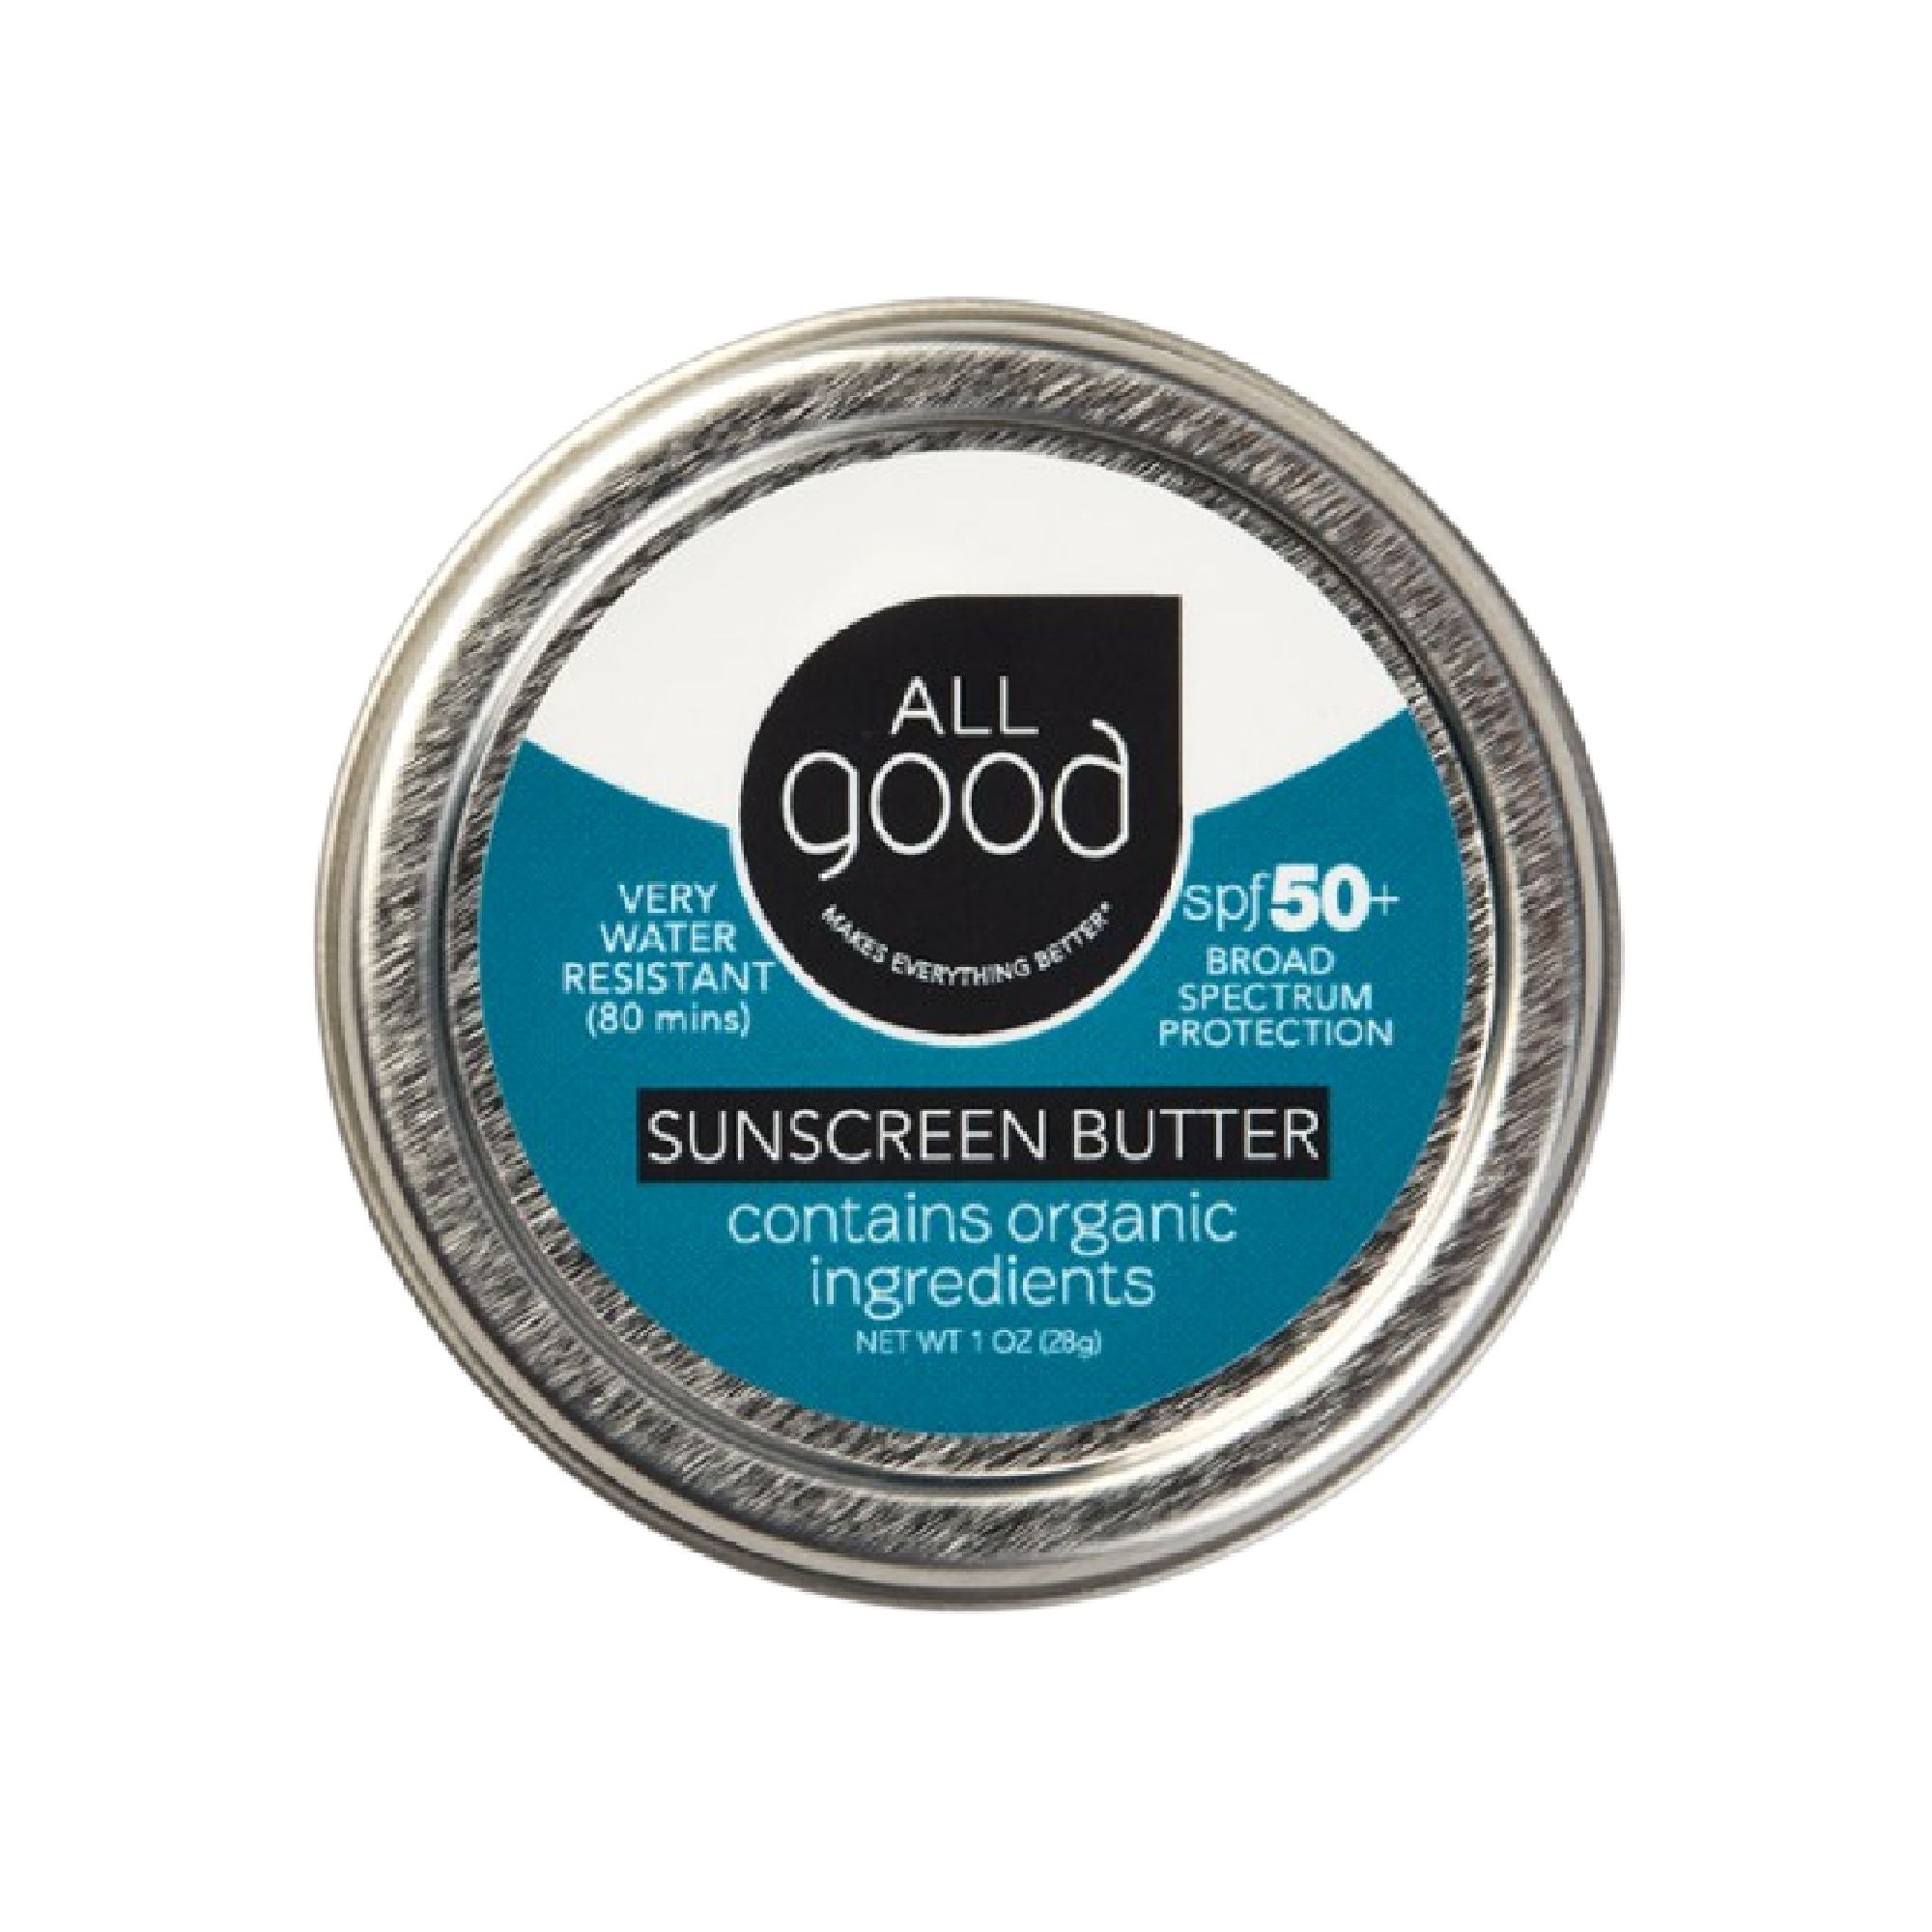 All Good sunscreen butter